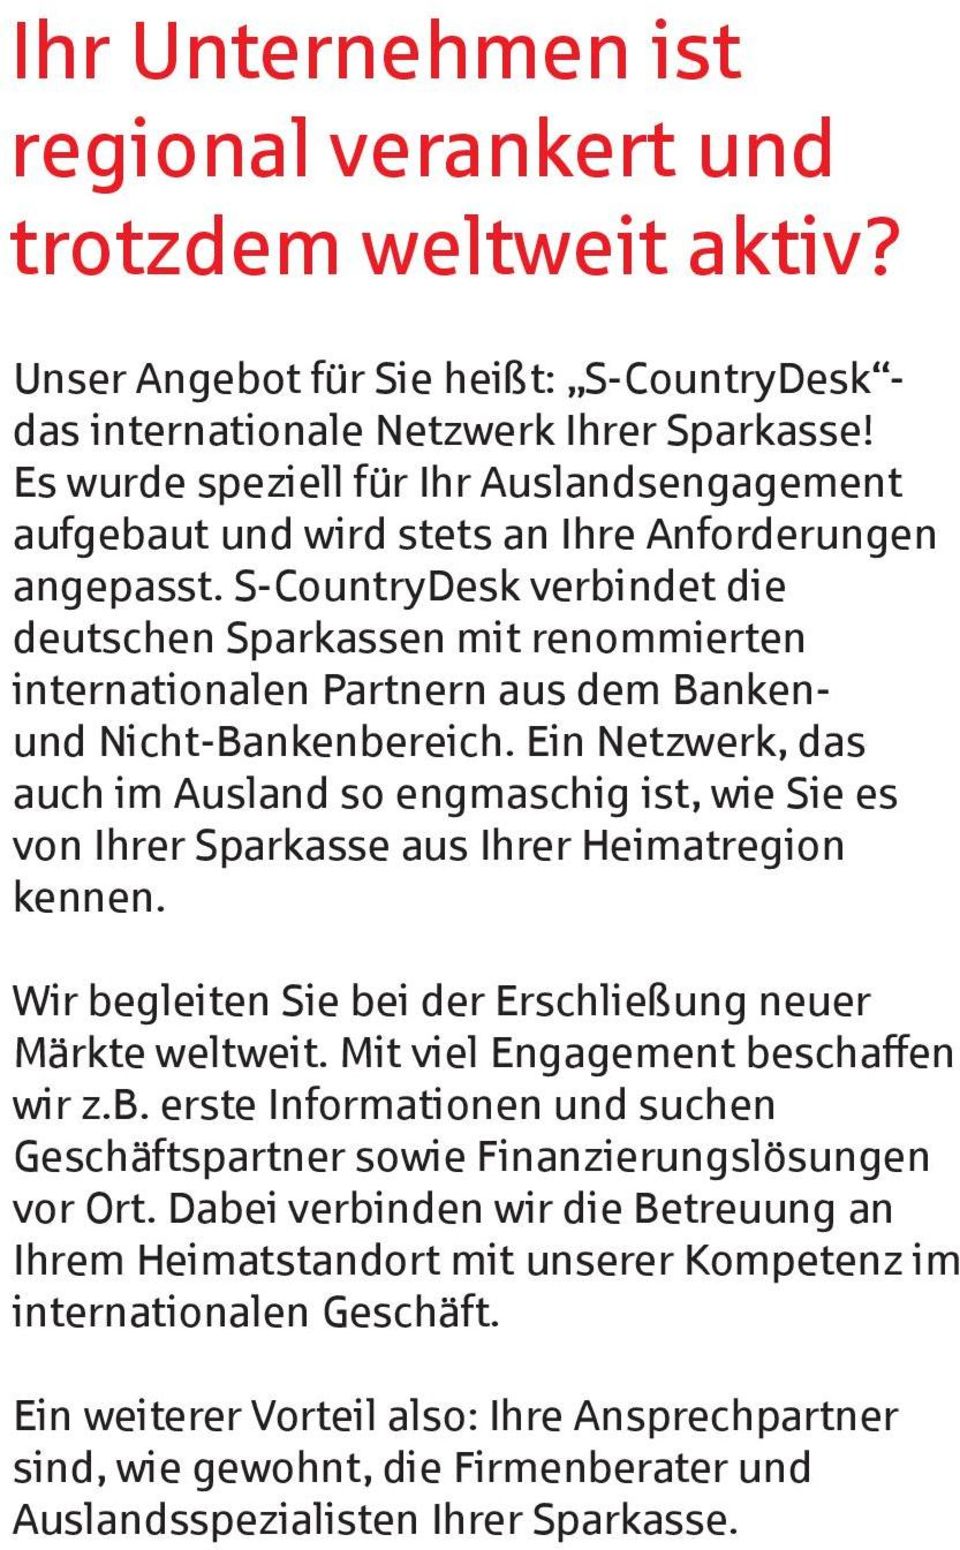 S-CountryDesk verbindet die deutschen Sparkassen mit renommierten internationalen Partnern aus dem Bankenund Nicht-Bankenbereich.